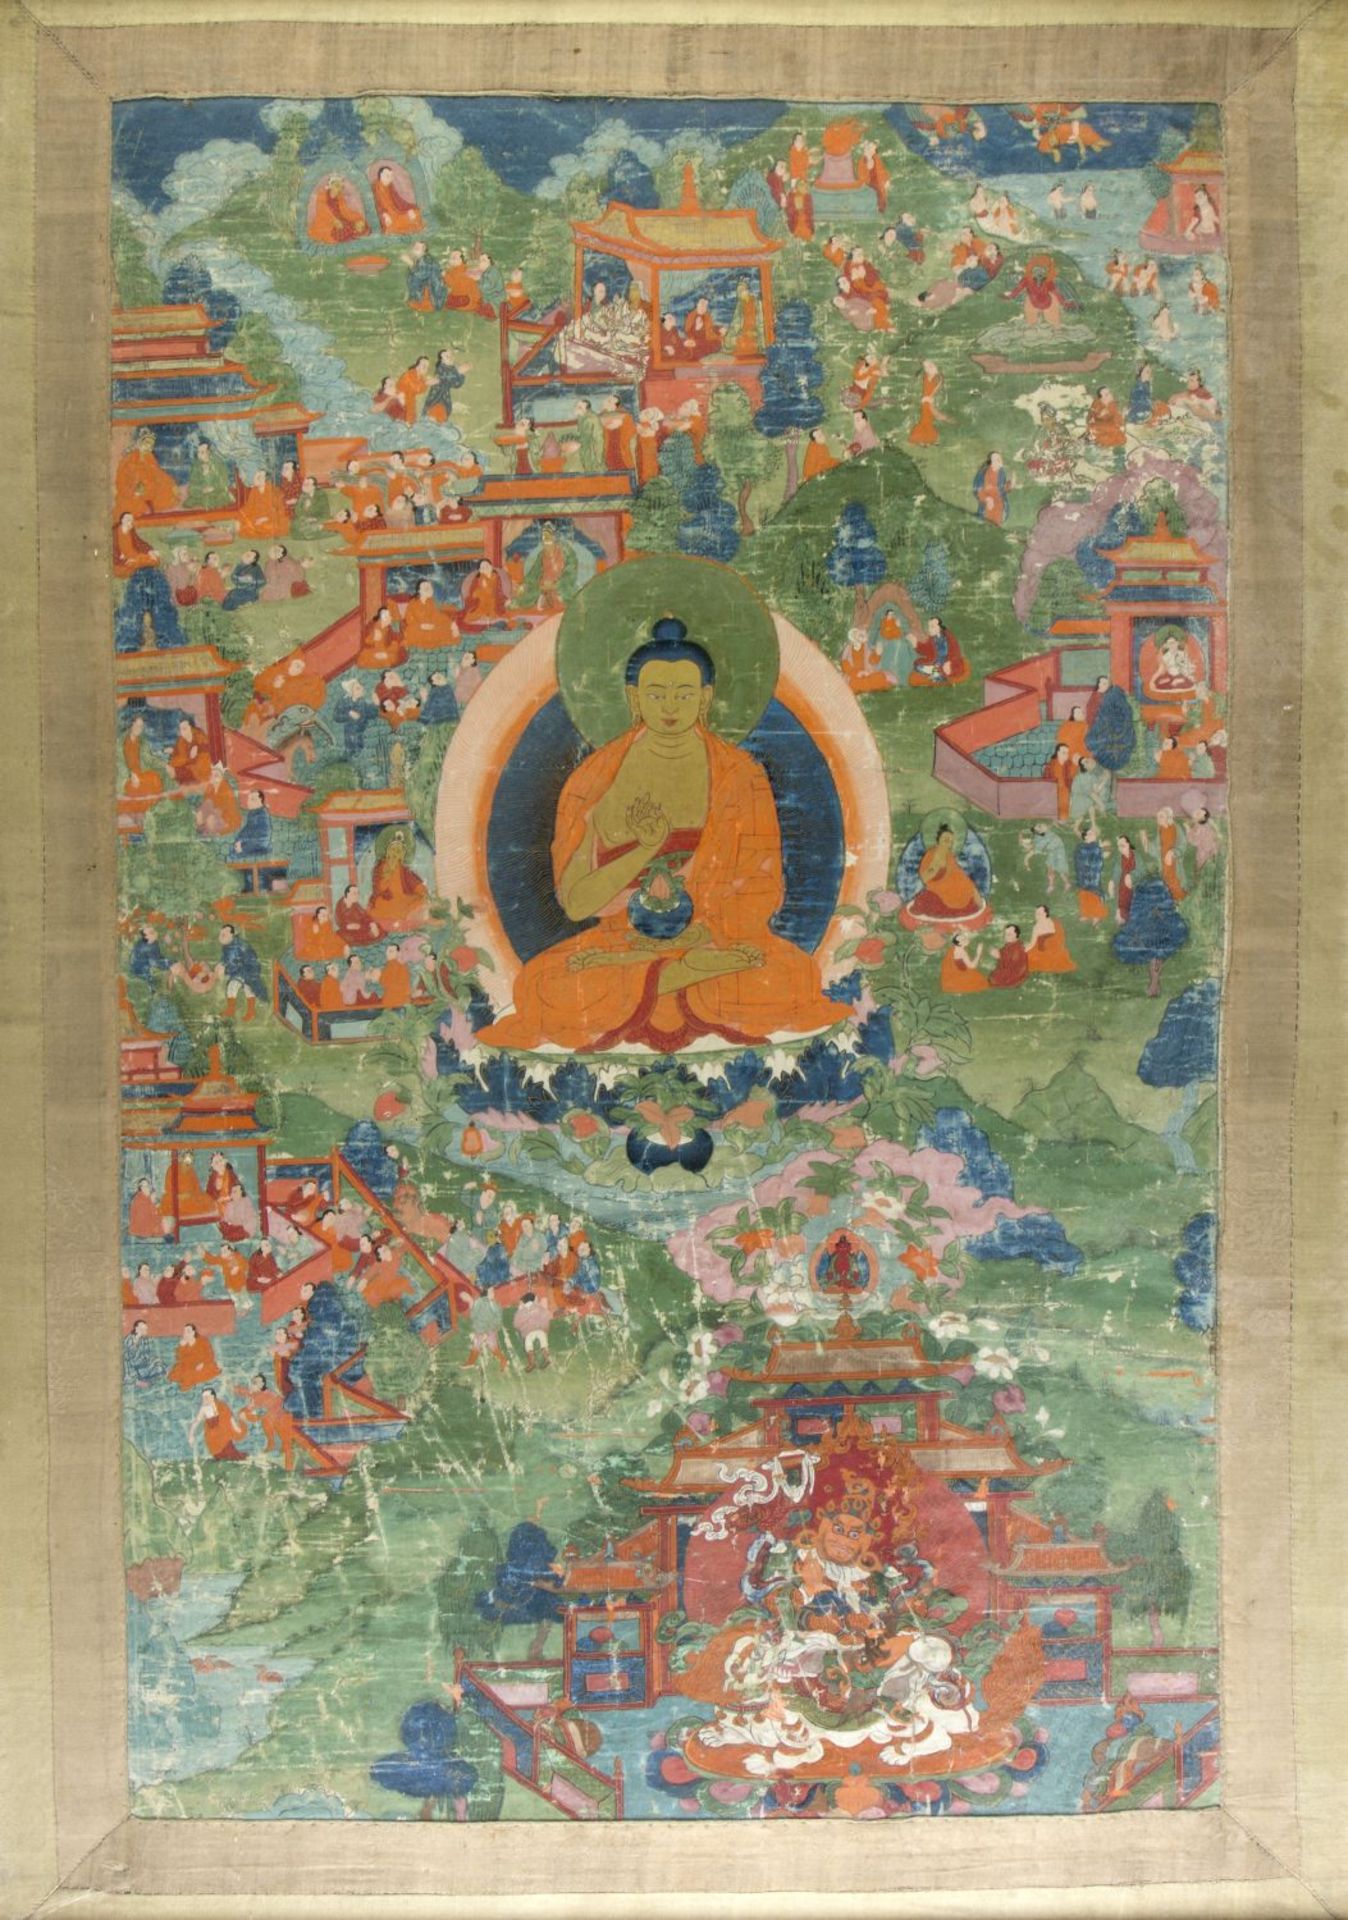 Thangka Tempera auf Leinwand. Mittig Buddhadarstellung, umgeben von versch. figürlichen Szenen. Tibe